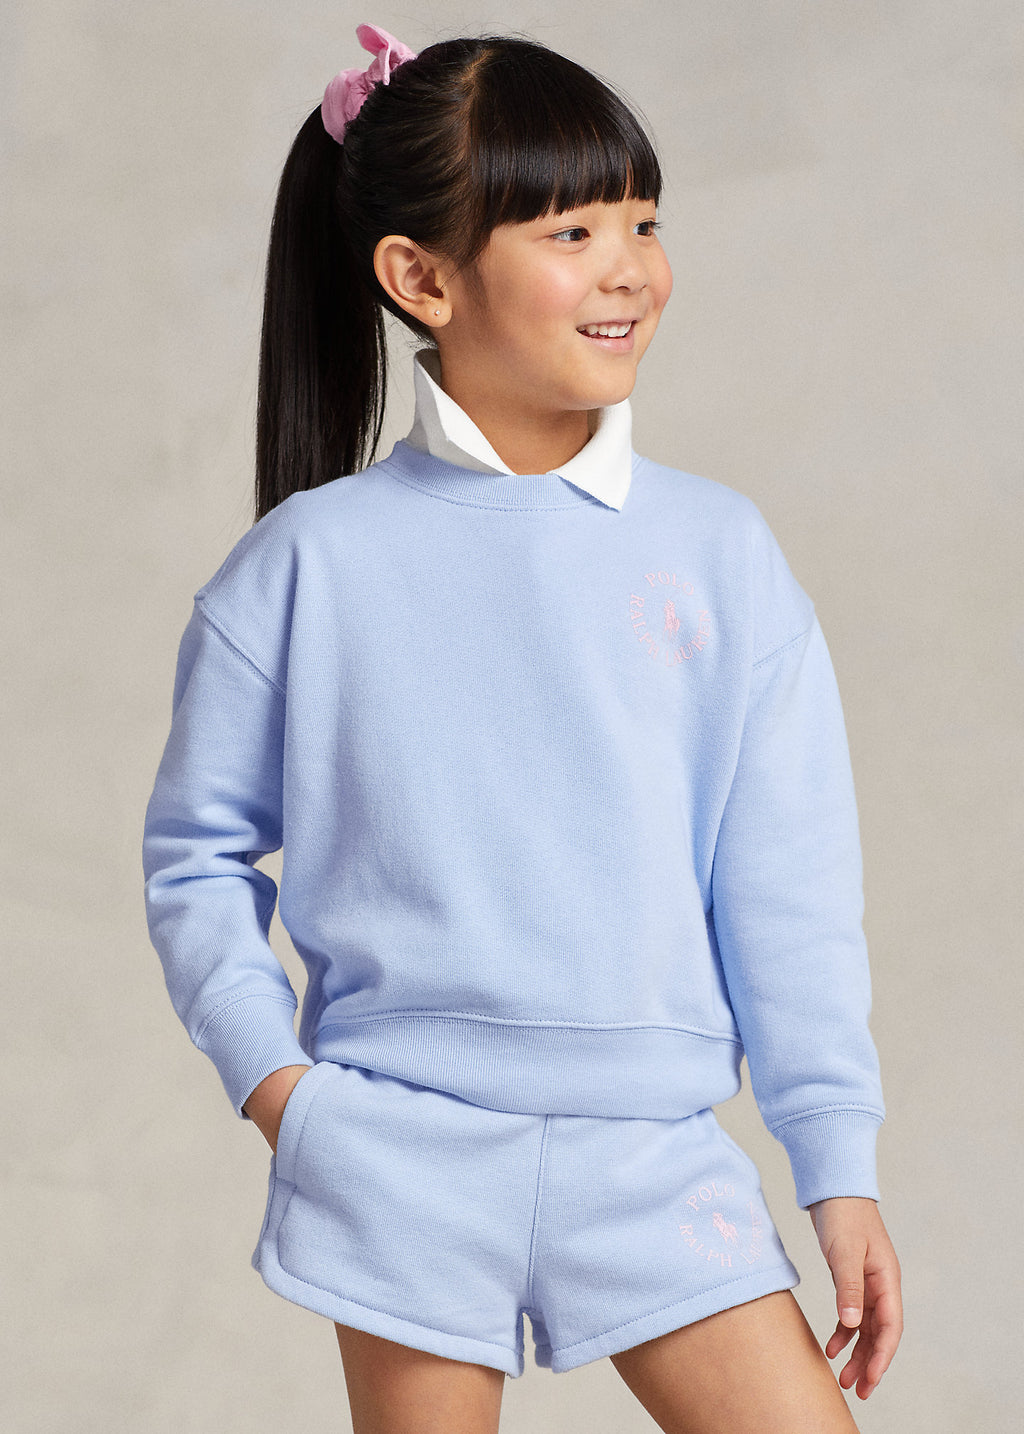 Ralh Lauren Big Pony Logo Fleece Sweatshirt Baby Blue